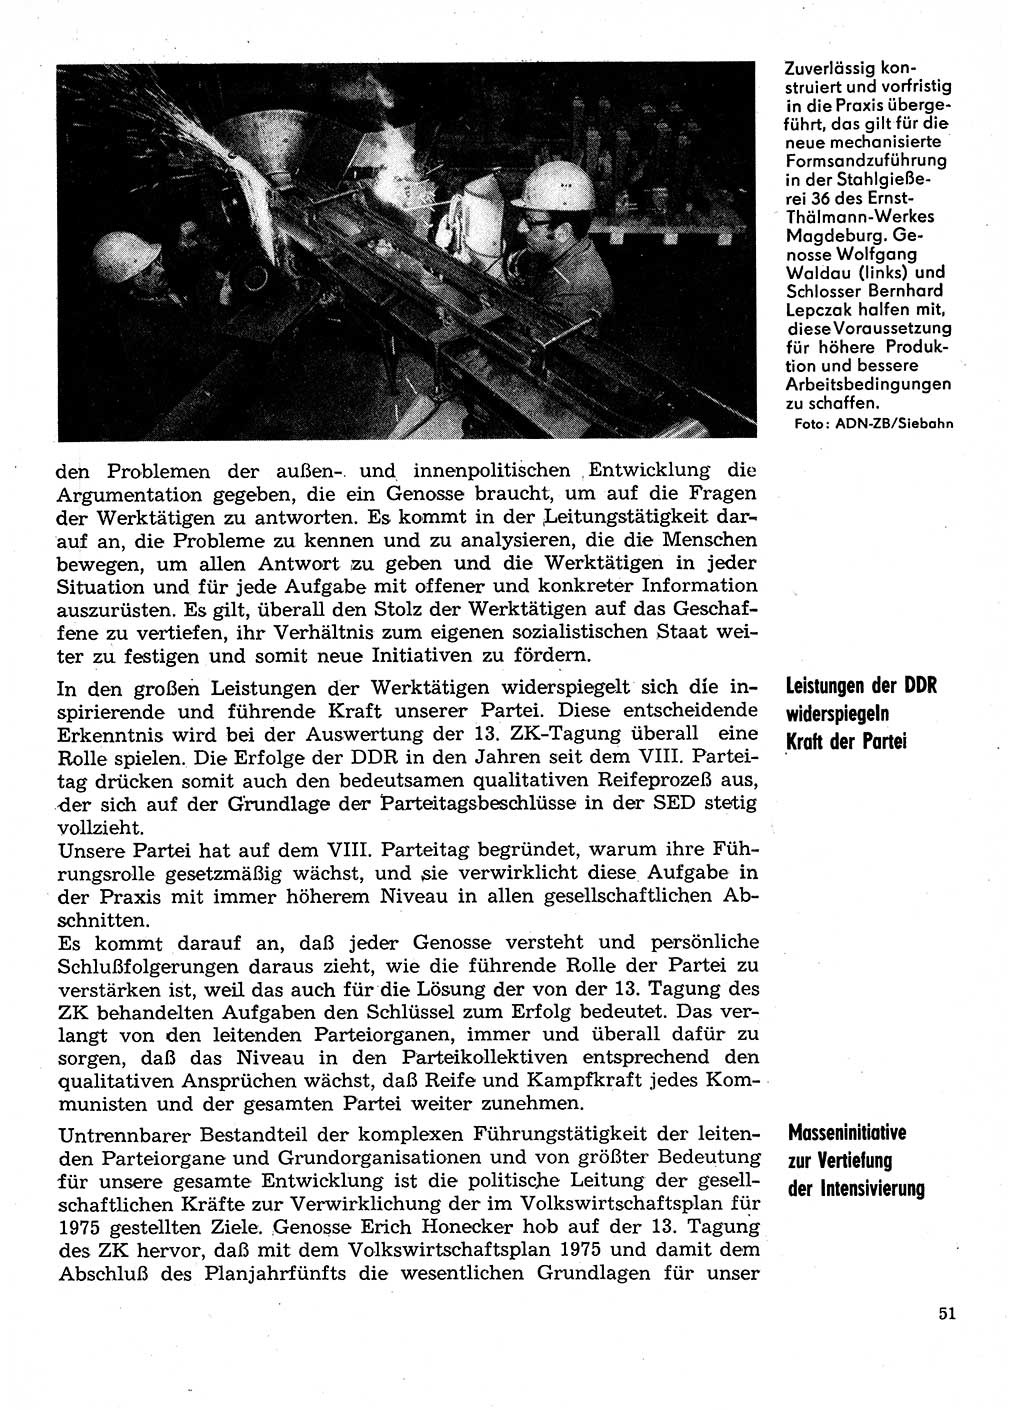 Neuer Weg (NW), Organ des Zentralkomitees (ZK) der SED (Sozialistische Einheitspartei Deutschlands) für Fragen des Parteilebens, 30. Jahrgang [Deutsche Demokratische Republik (DDR)] 1975, Seite 51 (NW ZK SED DDR 1975, S. 51)